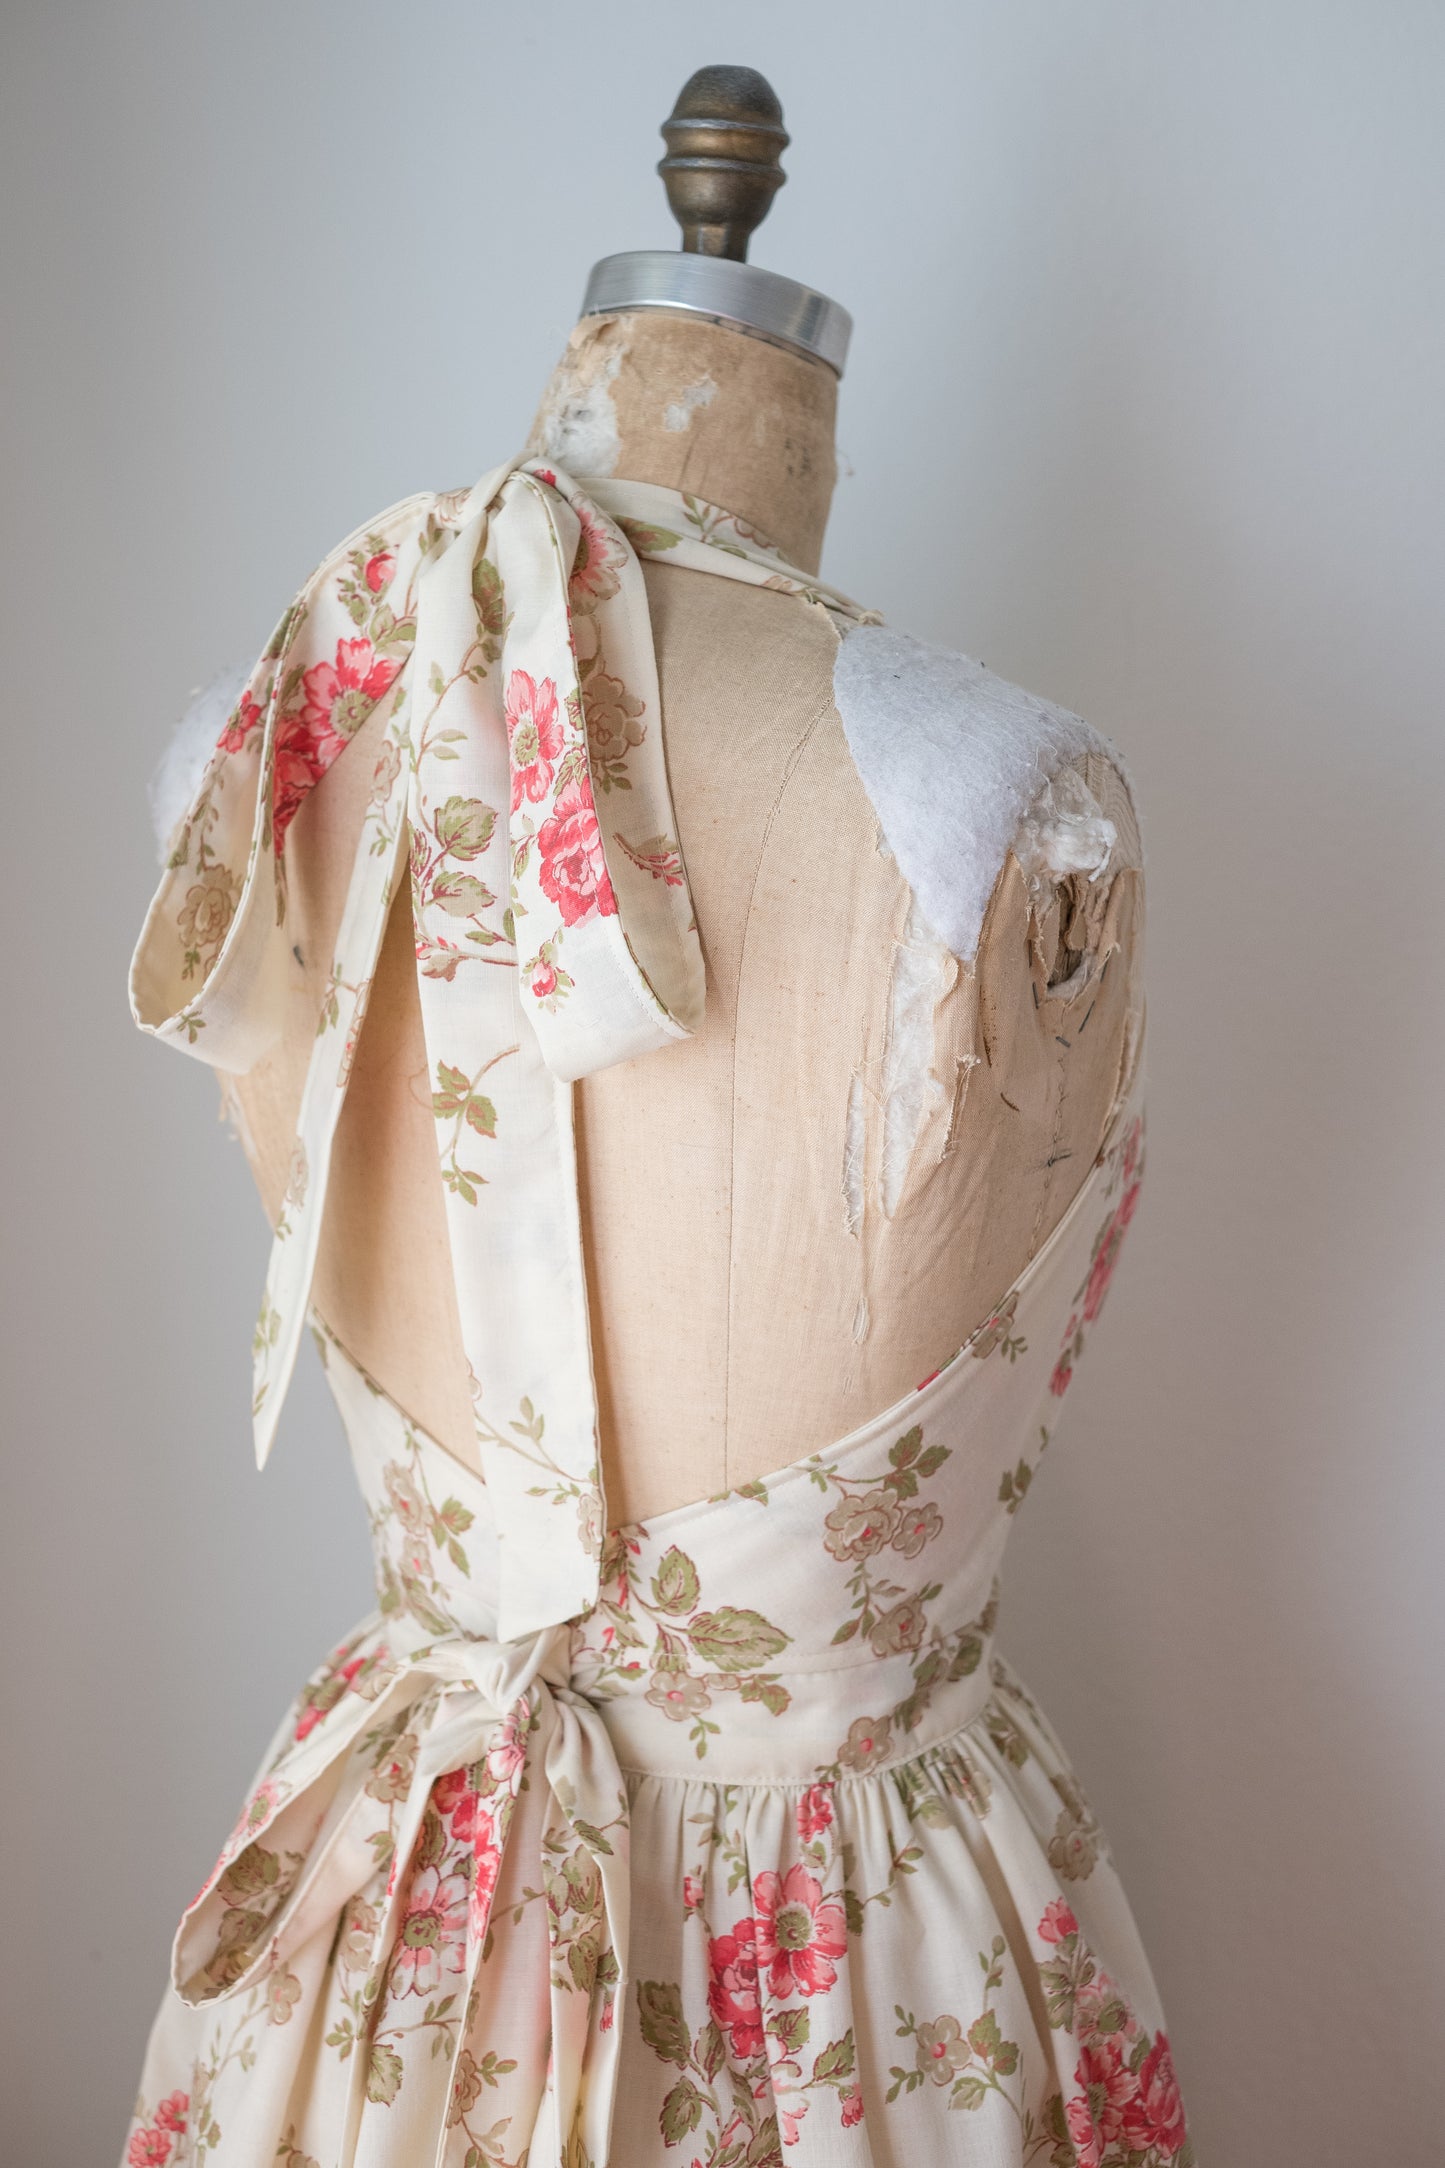 Handmade vintage floral apron set - pink rose